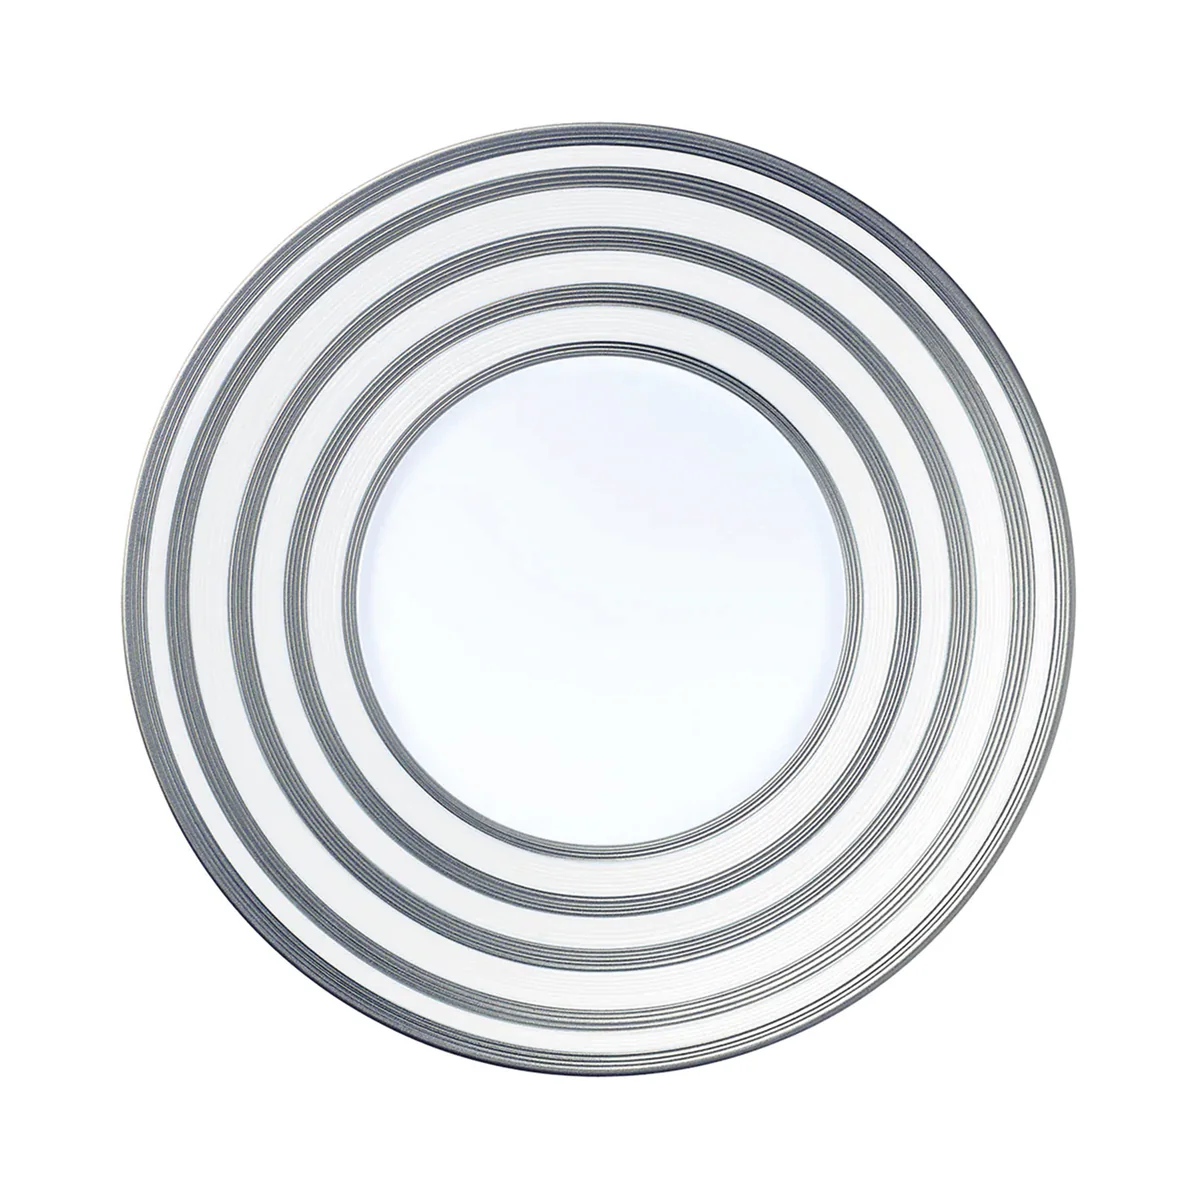 HEMISPHERE Platinum stripes- 29 cm plate